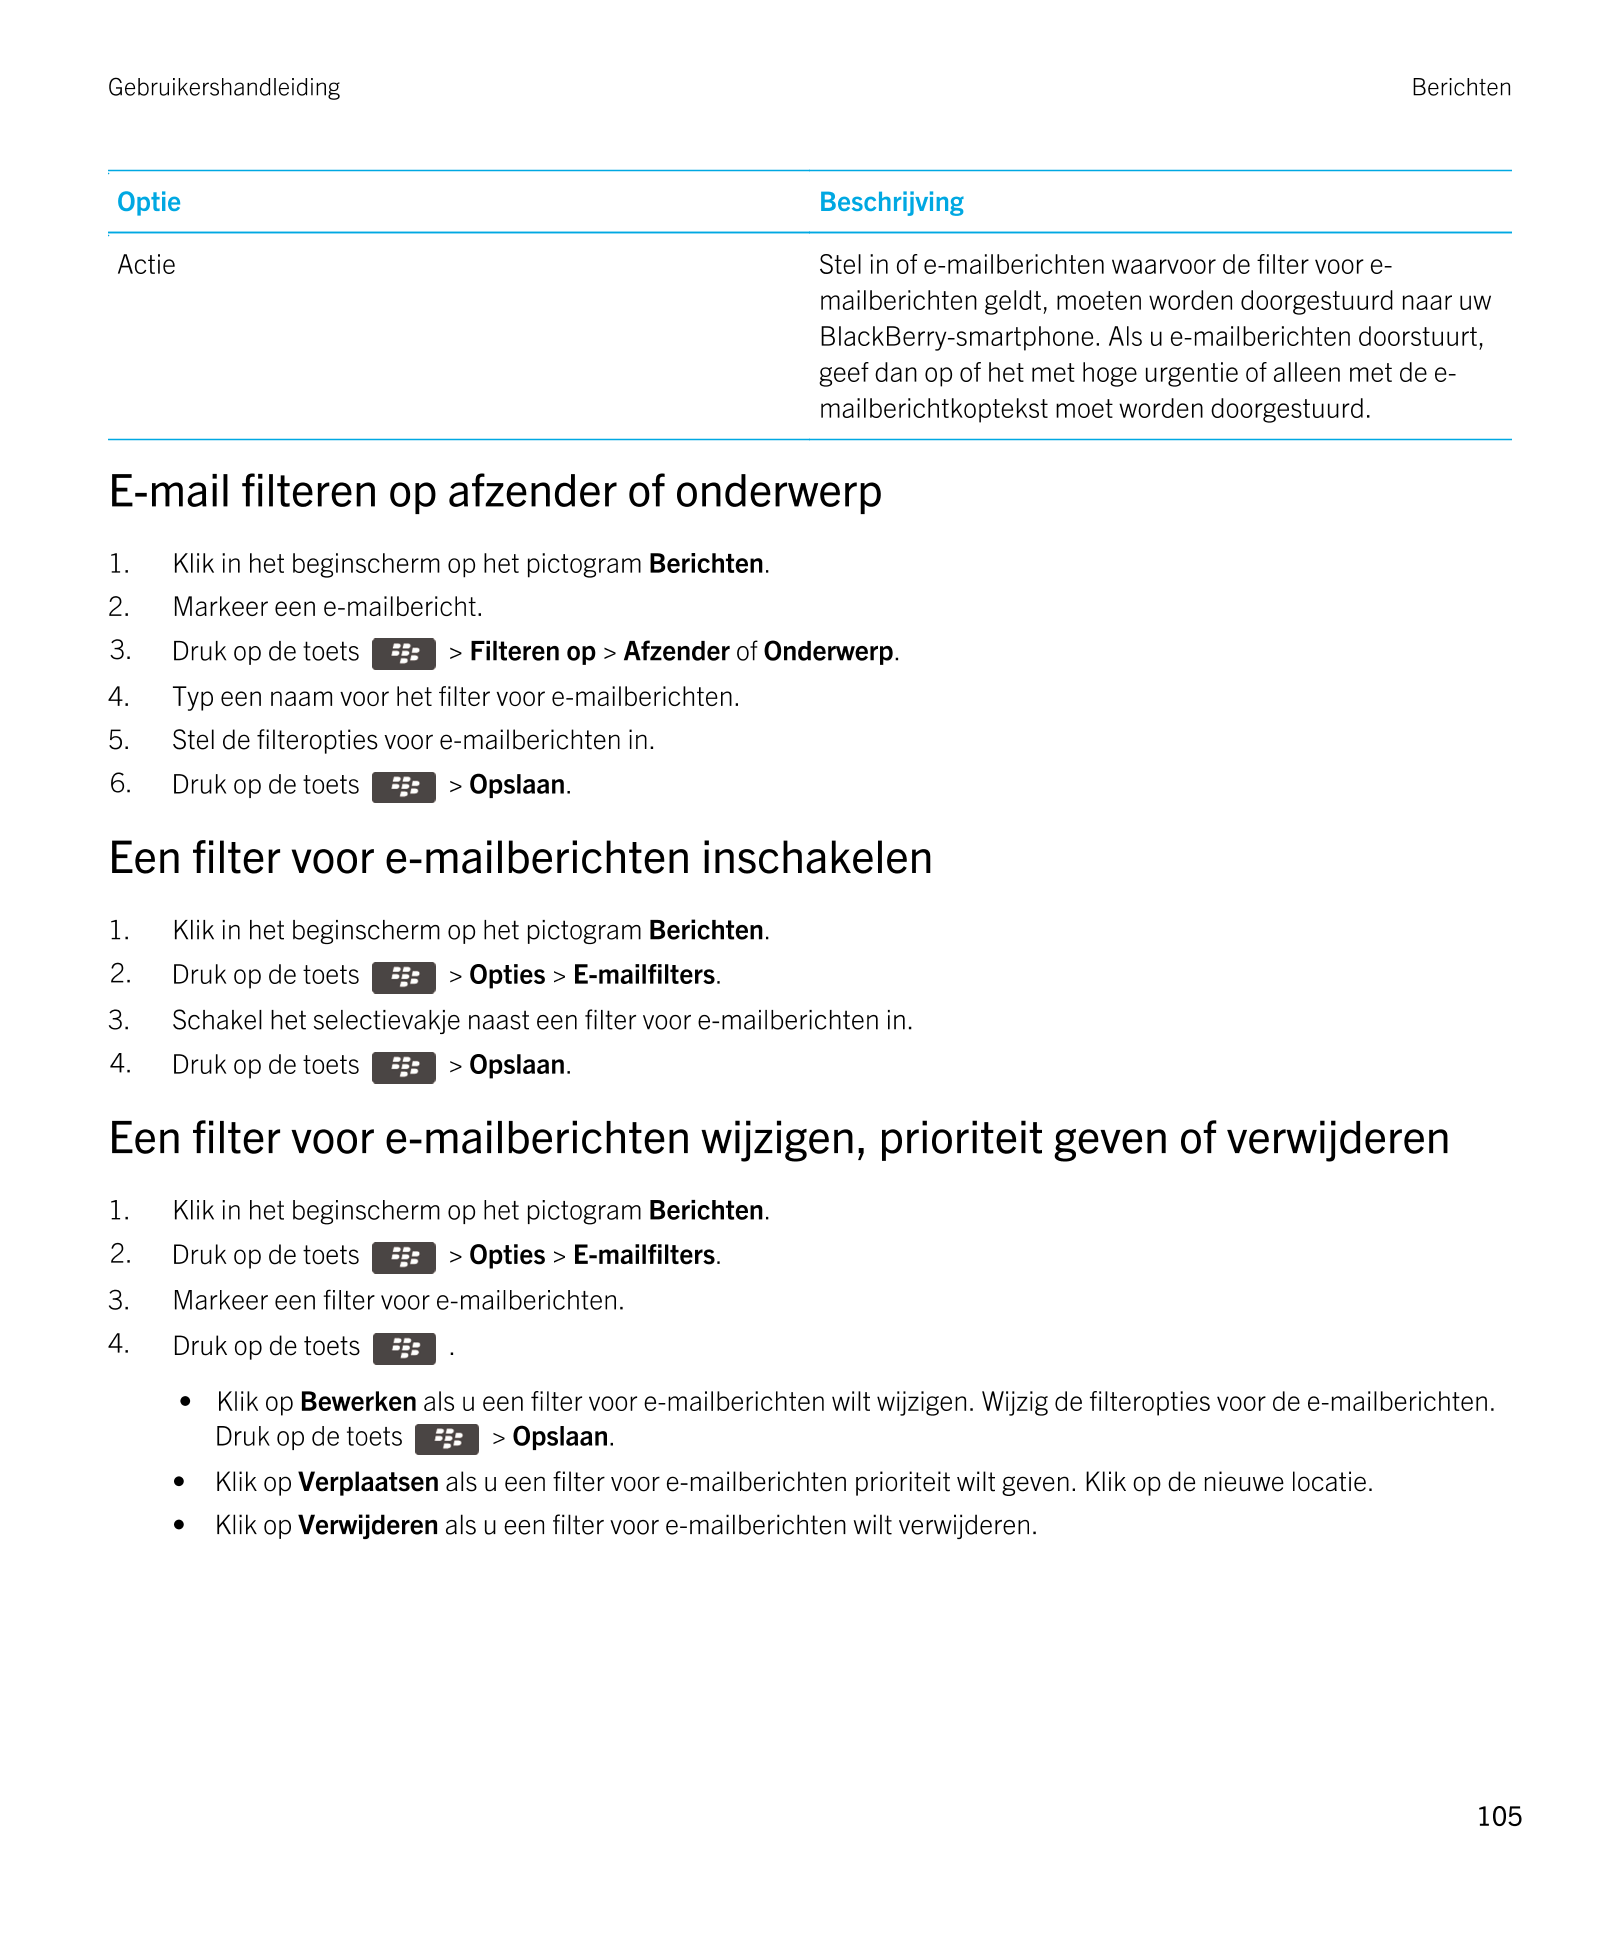 Gebruikershandleiding Berichten
Optie Beschrijving
Actie Stel in of e-mailberichten waarvoor de filter voor e-
mailberichten gel